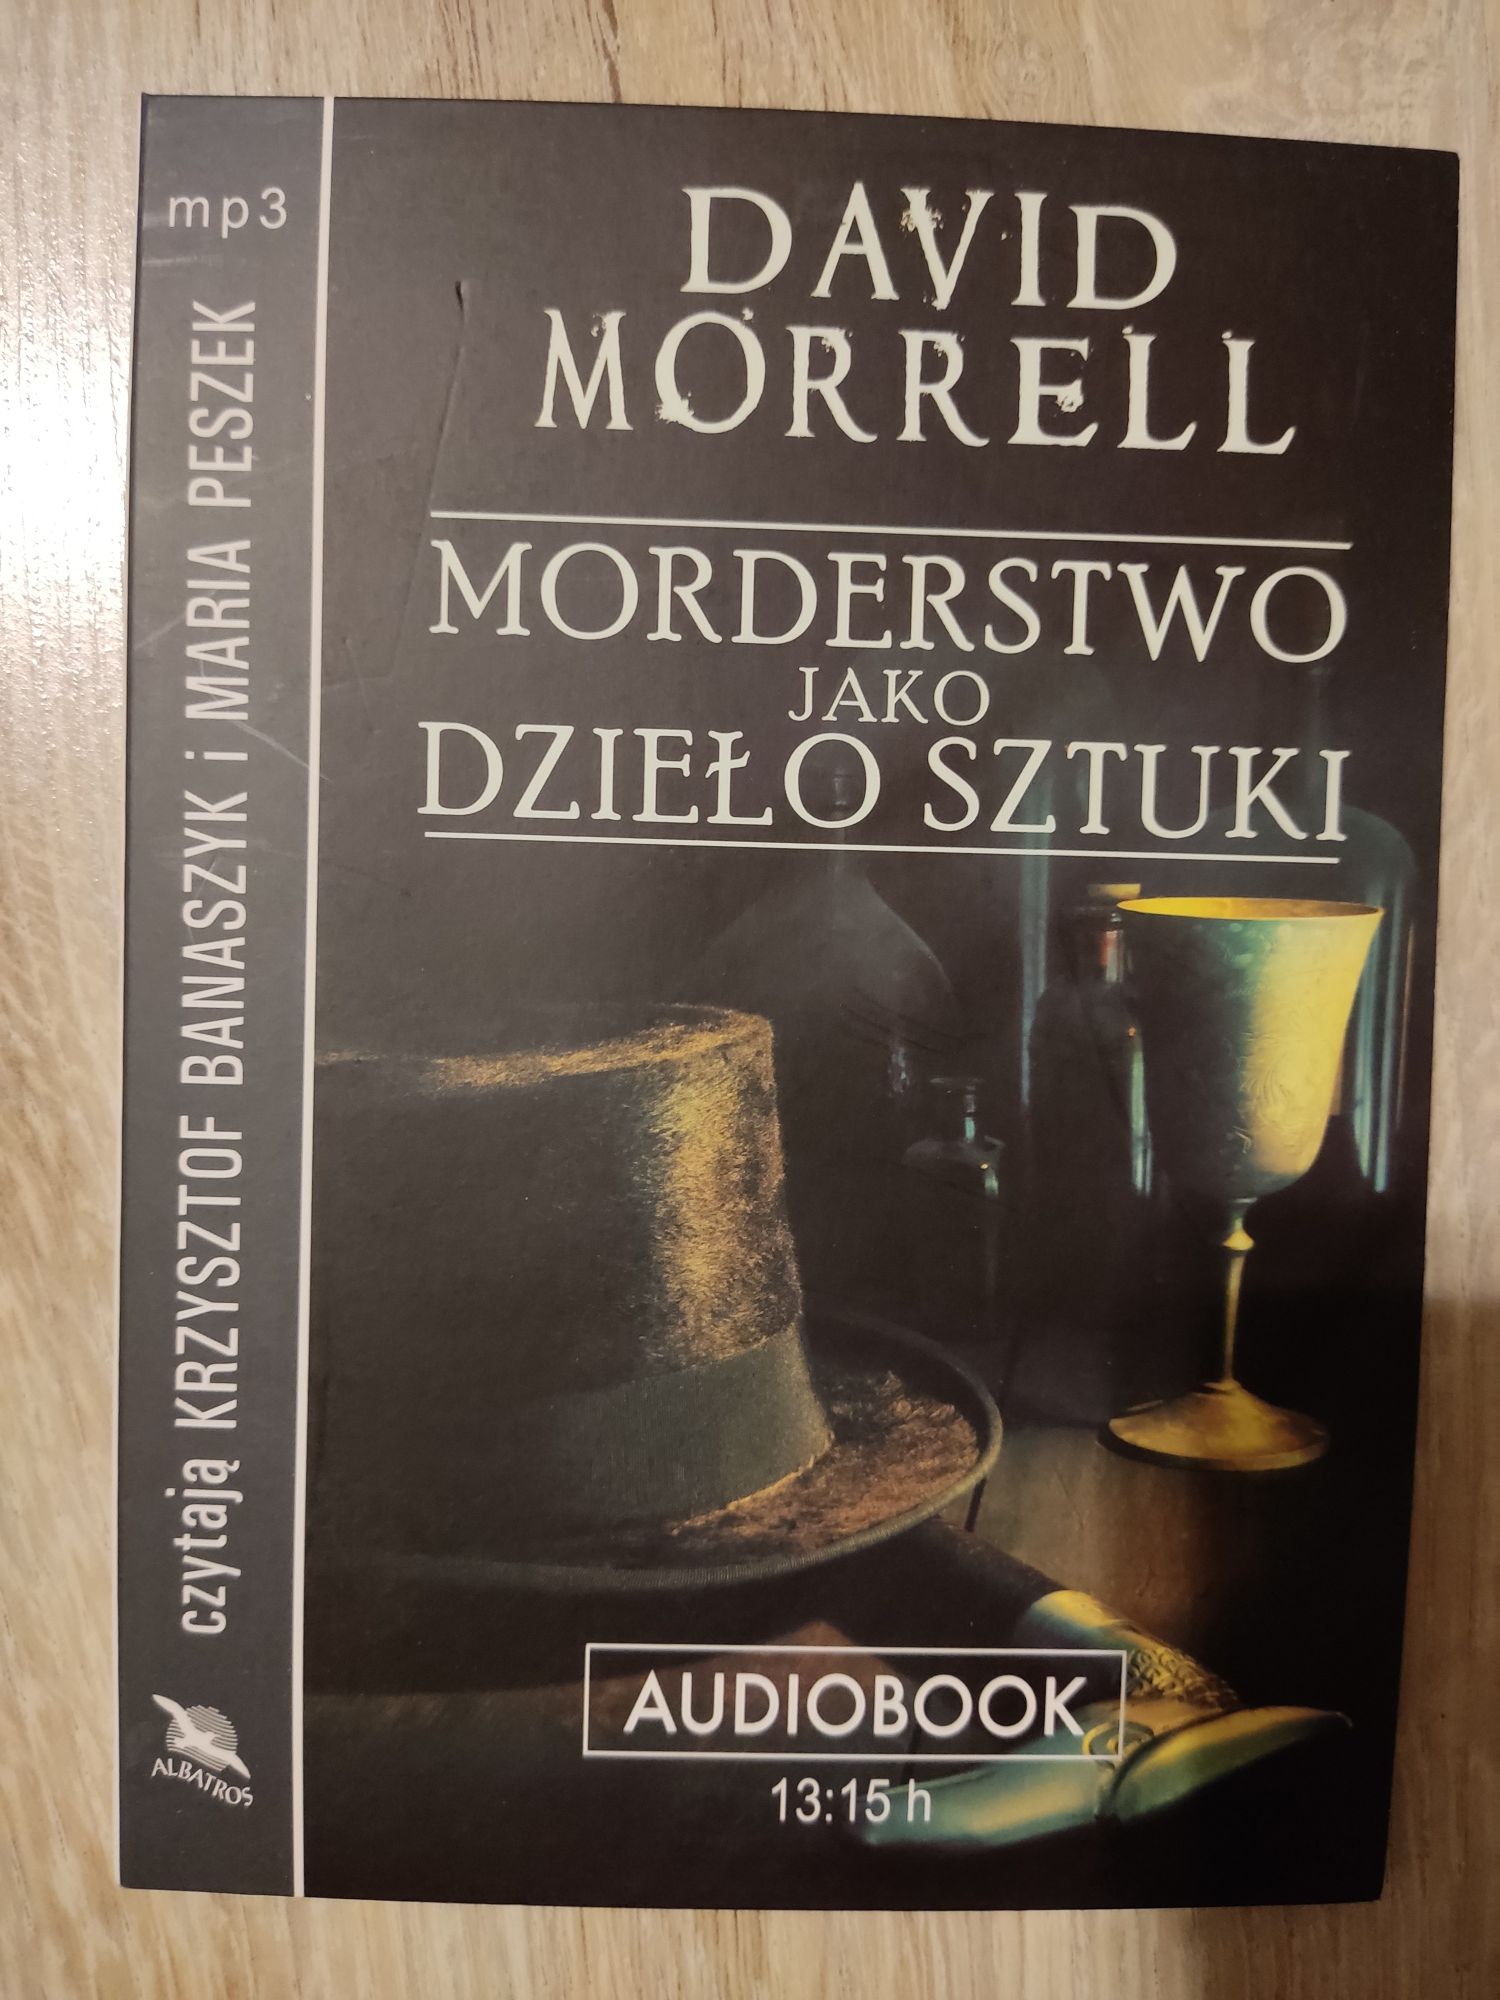 David Morrell Morderstwo jako dzieło sztuki audiobook